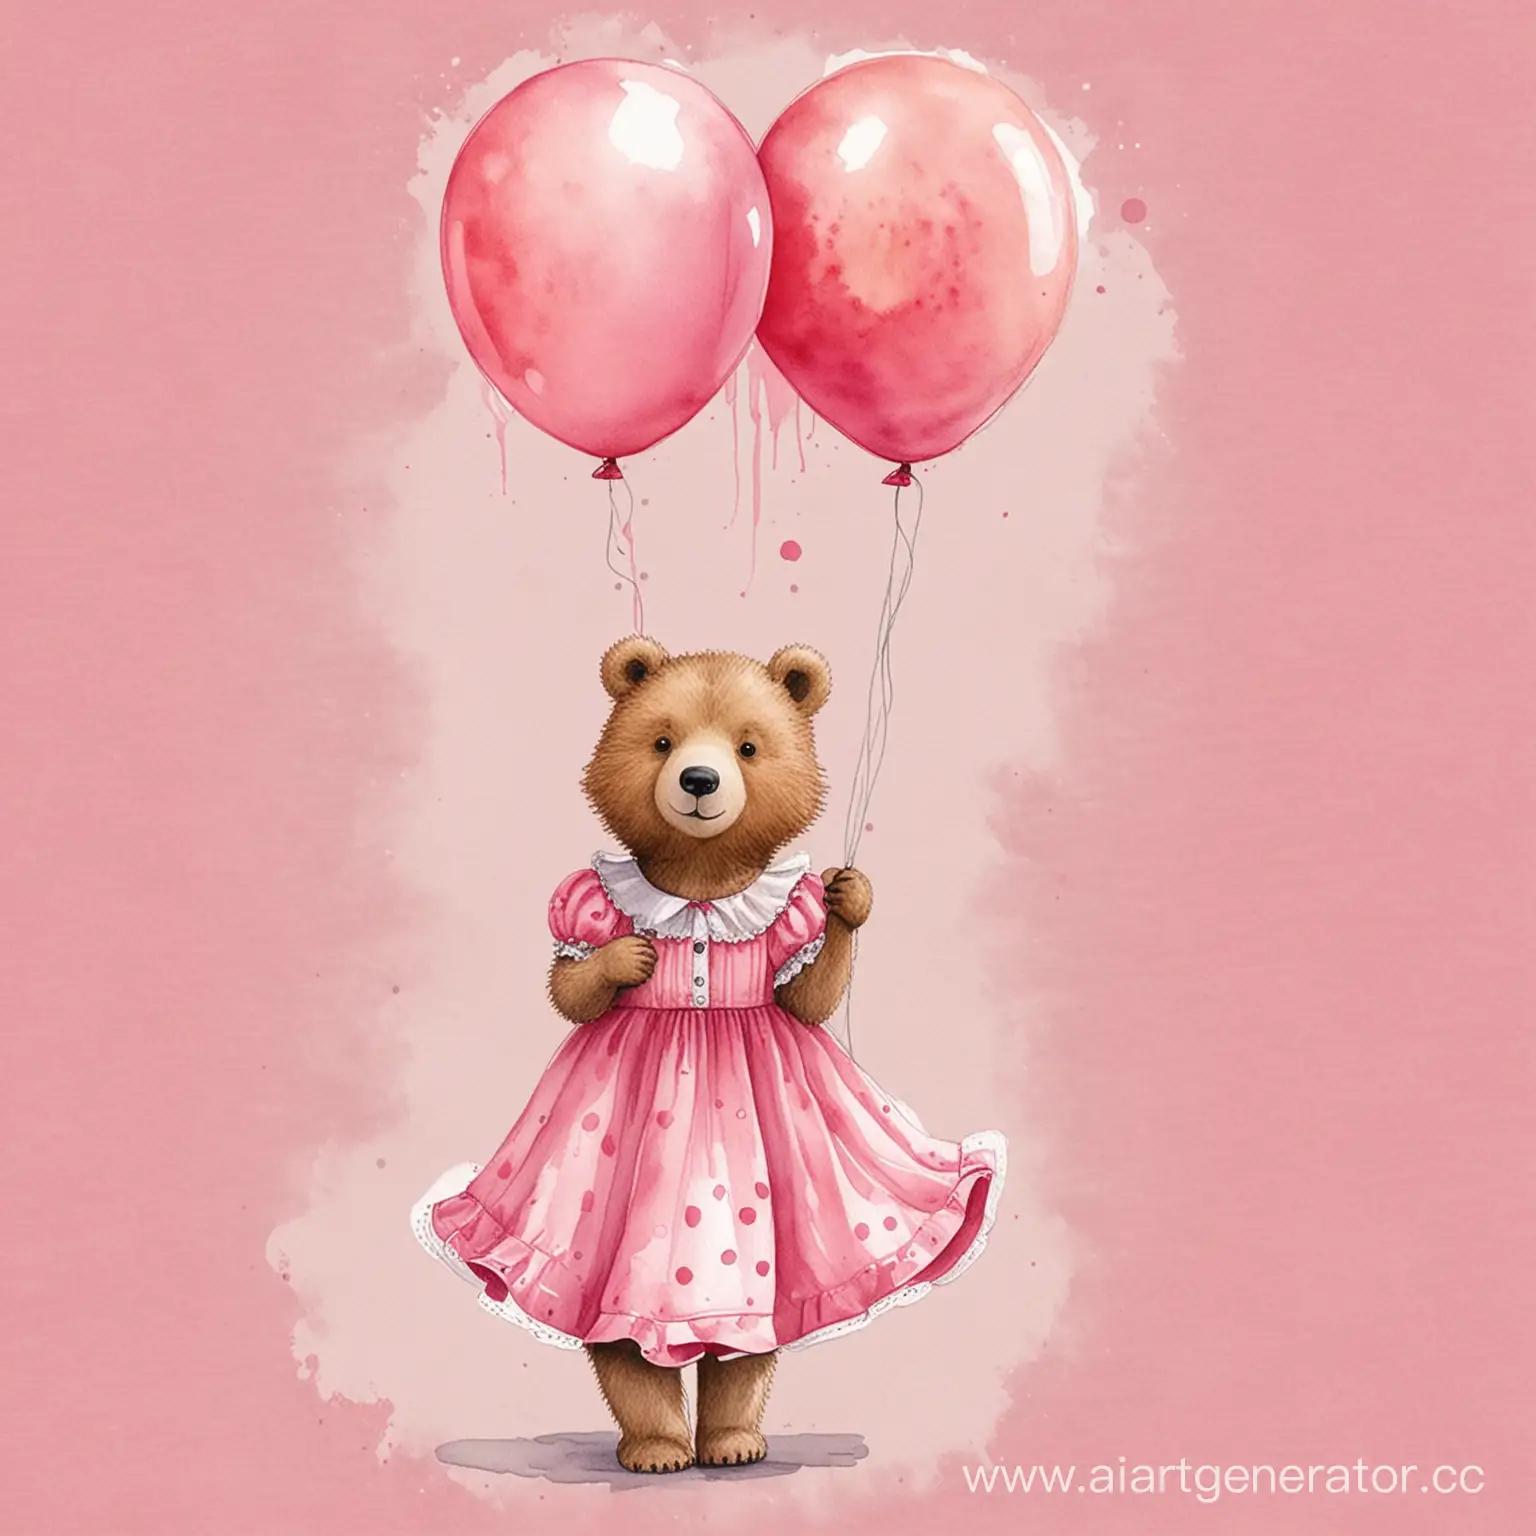 милый мишка в розовом платье с шарами акварельный рисунок

